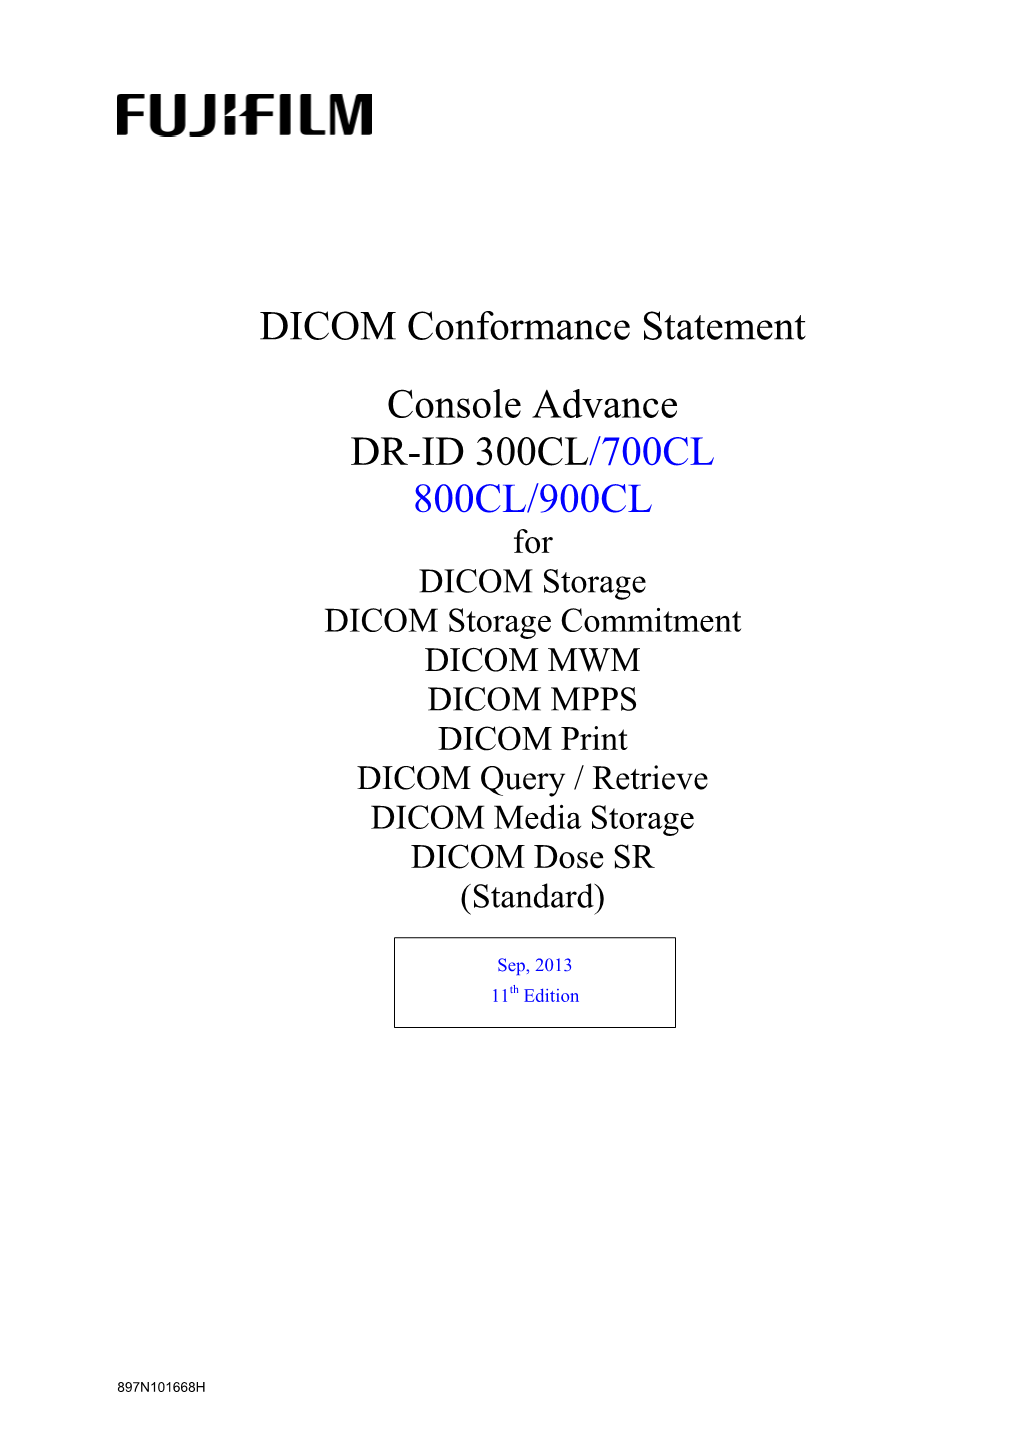 DICOM Conformance Statement Console Advance DR-ID 300CL